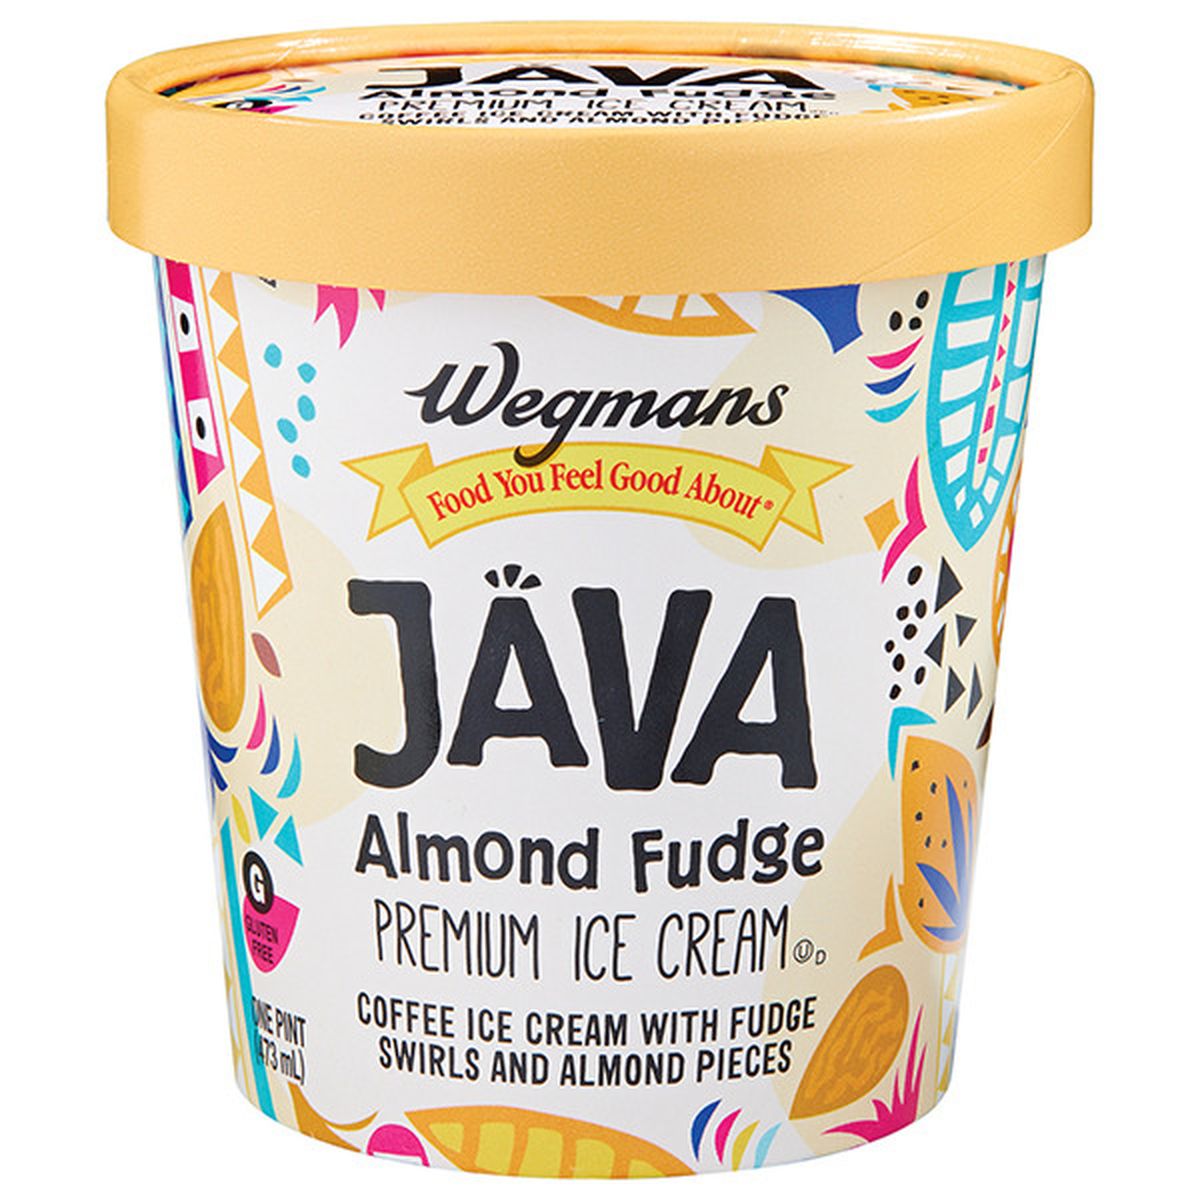 Calories in Wegmans Java Almond Fudge Premium Ice Cream